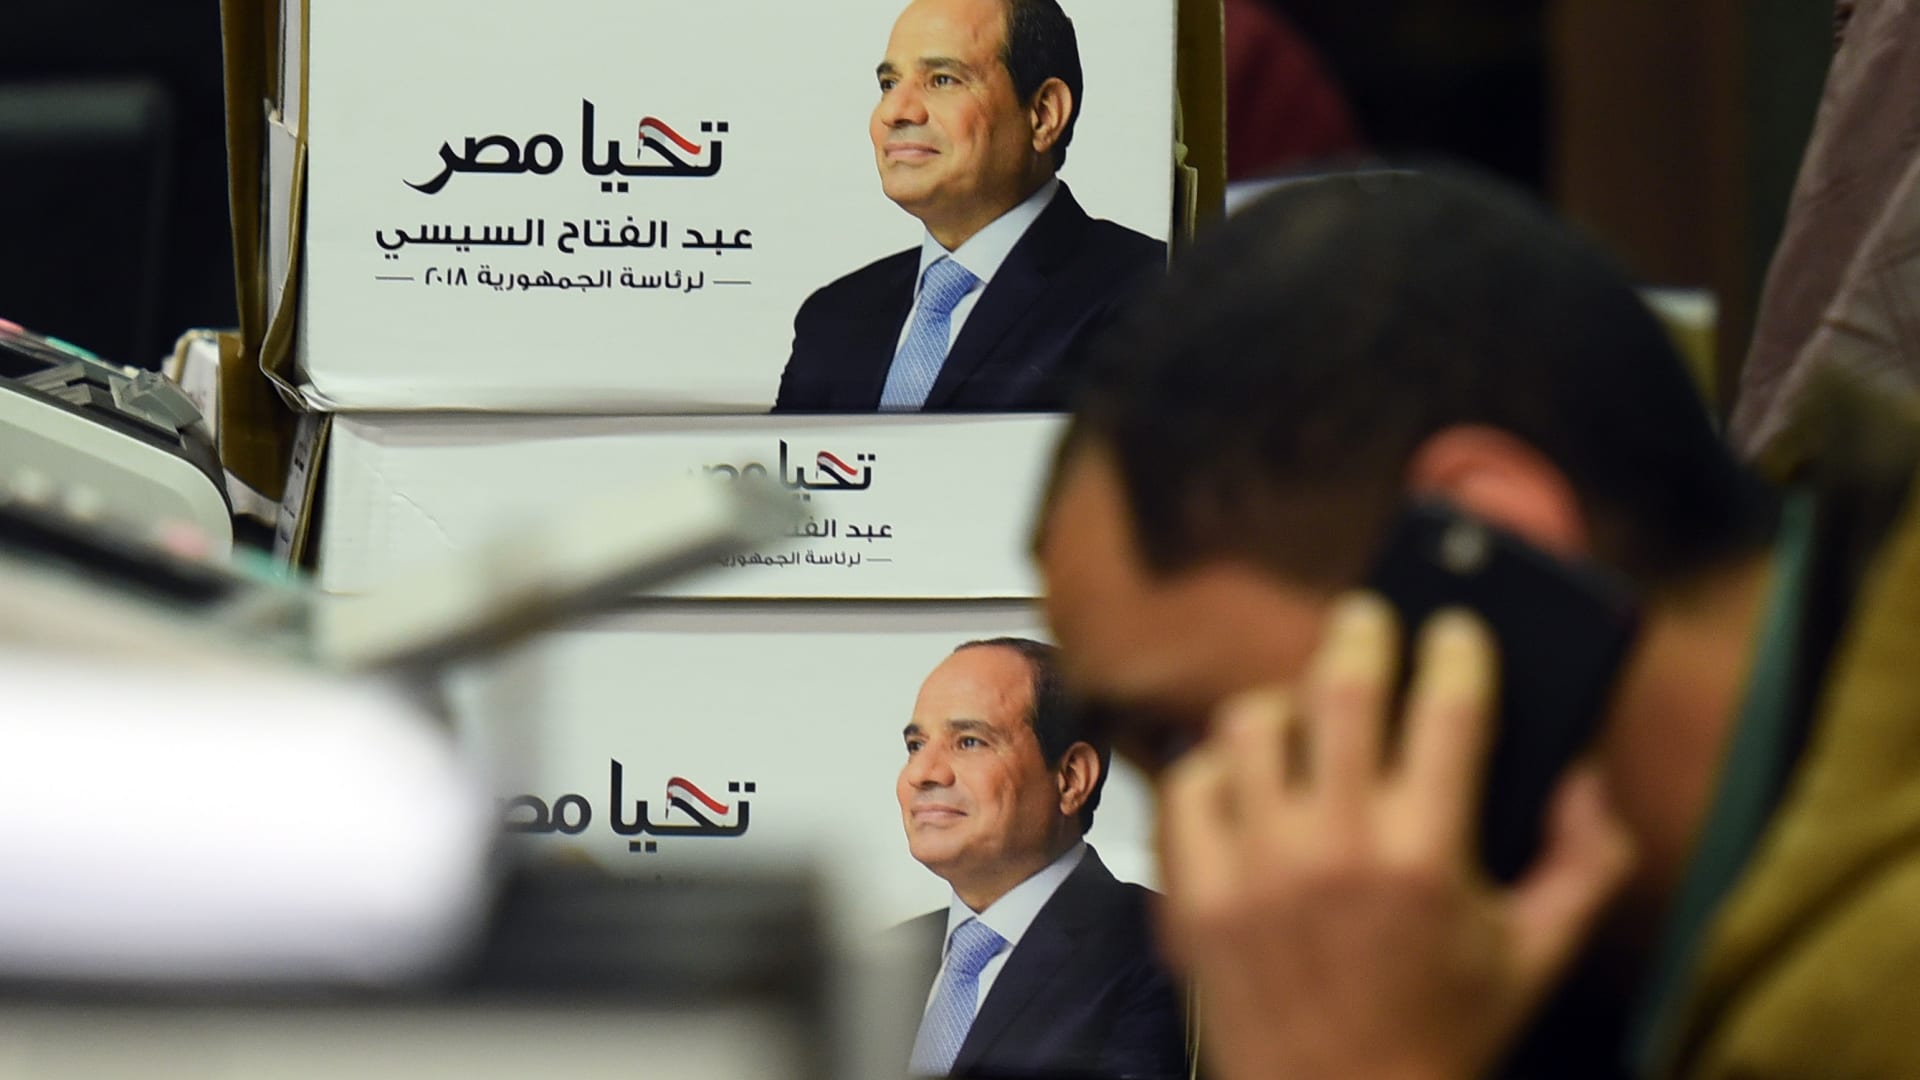 مصر: وسط دعوات المقاطعة.. فتاوى تحرّم الامتناع عن التصويت